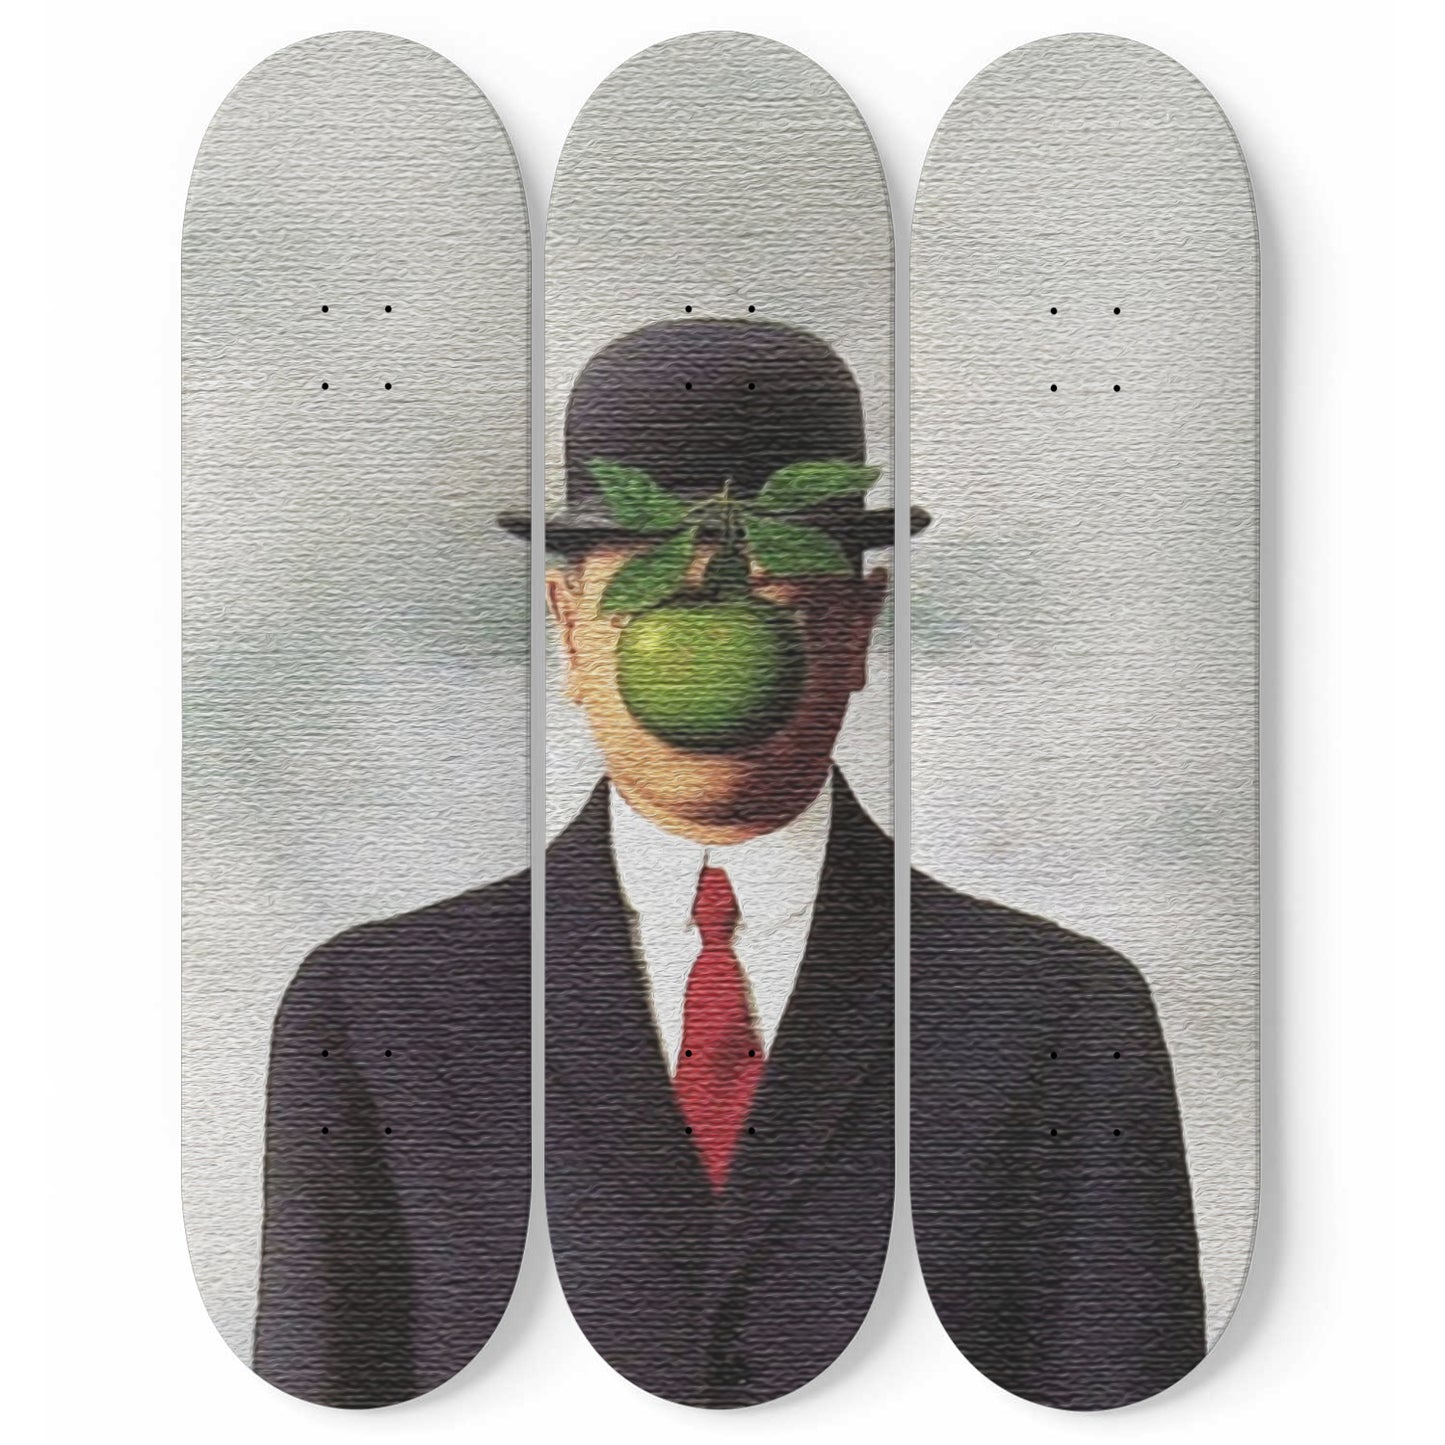 vægt bølge Forberedende navn René Magritte - The Son of Man 1964 Painting - 3-piece Skateboard Wall –  Skateboard Artsy